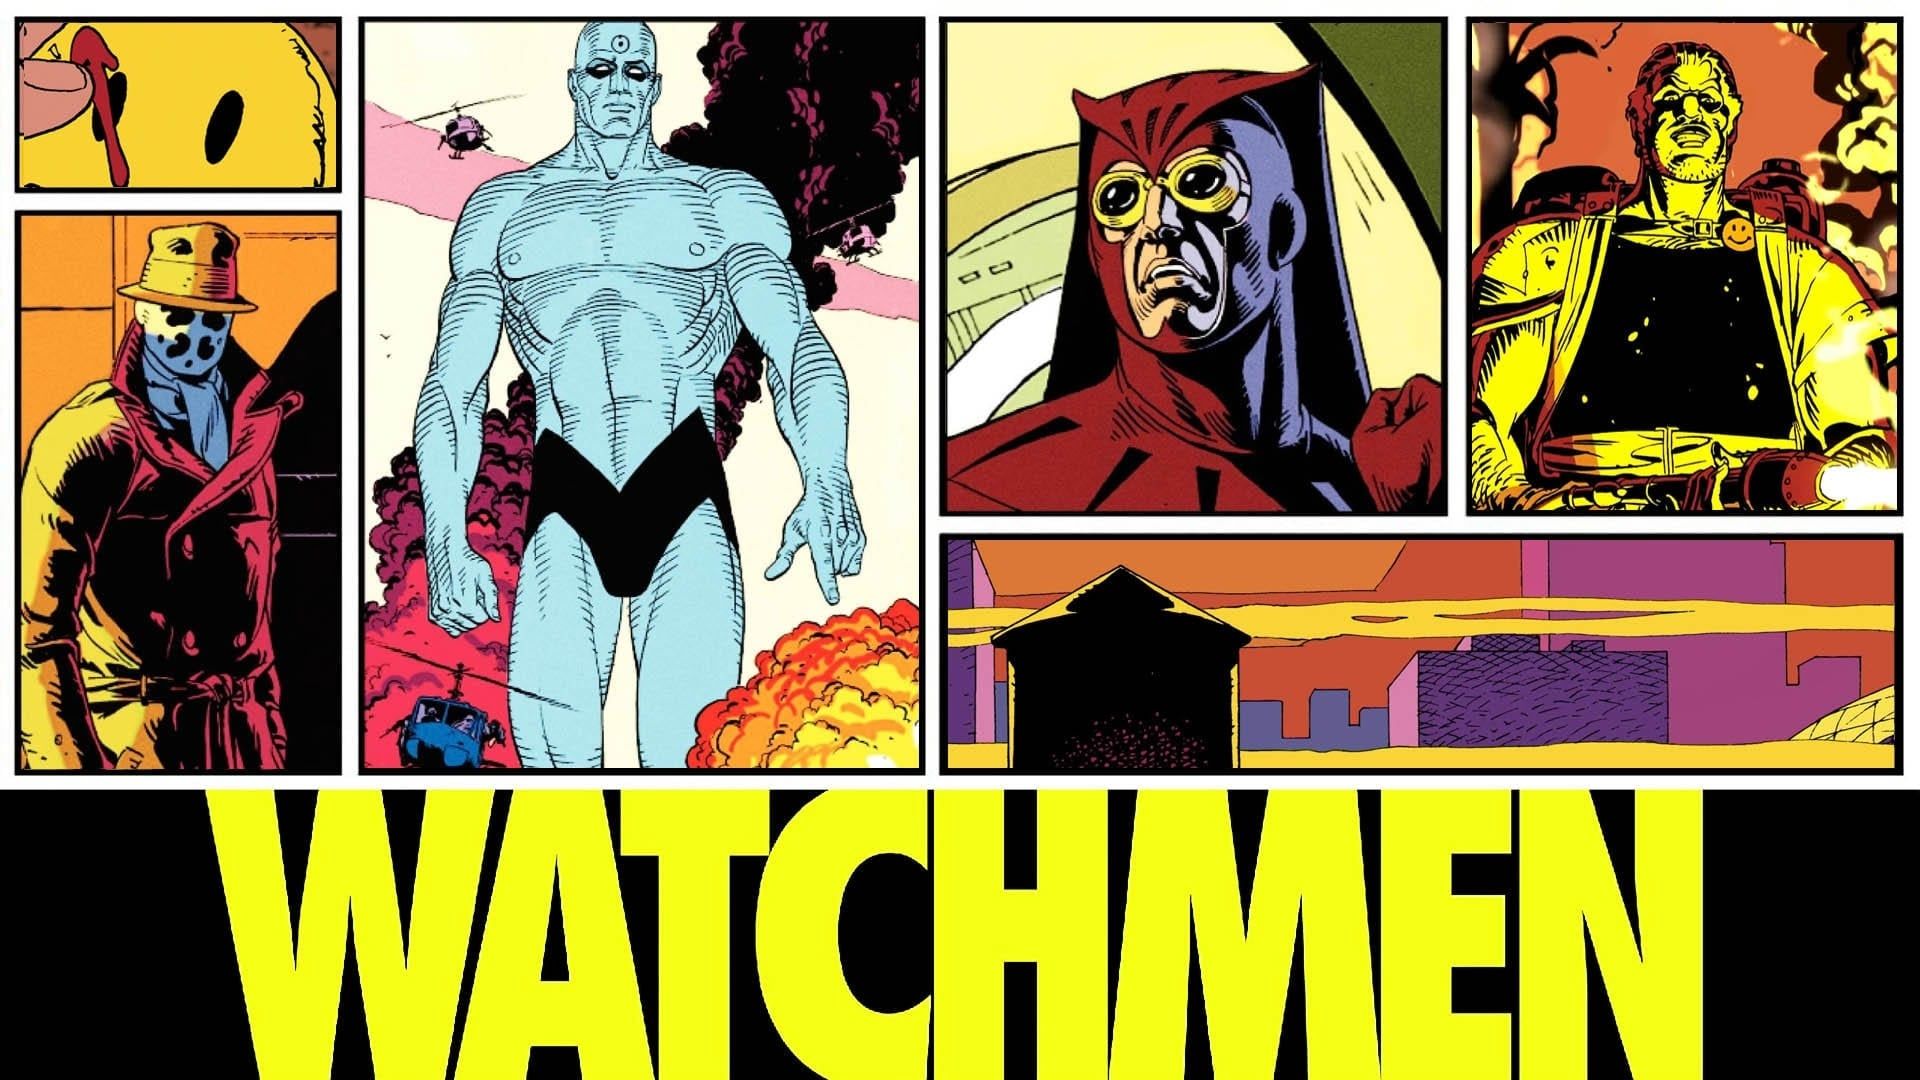 Watchmen background